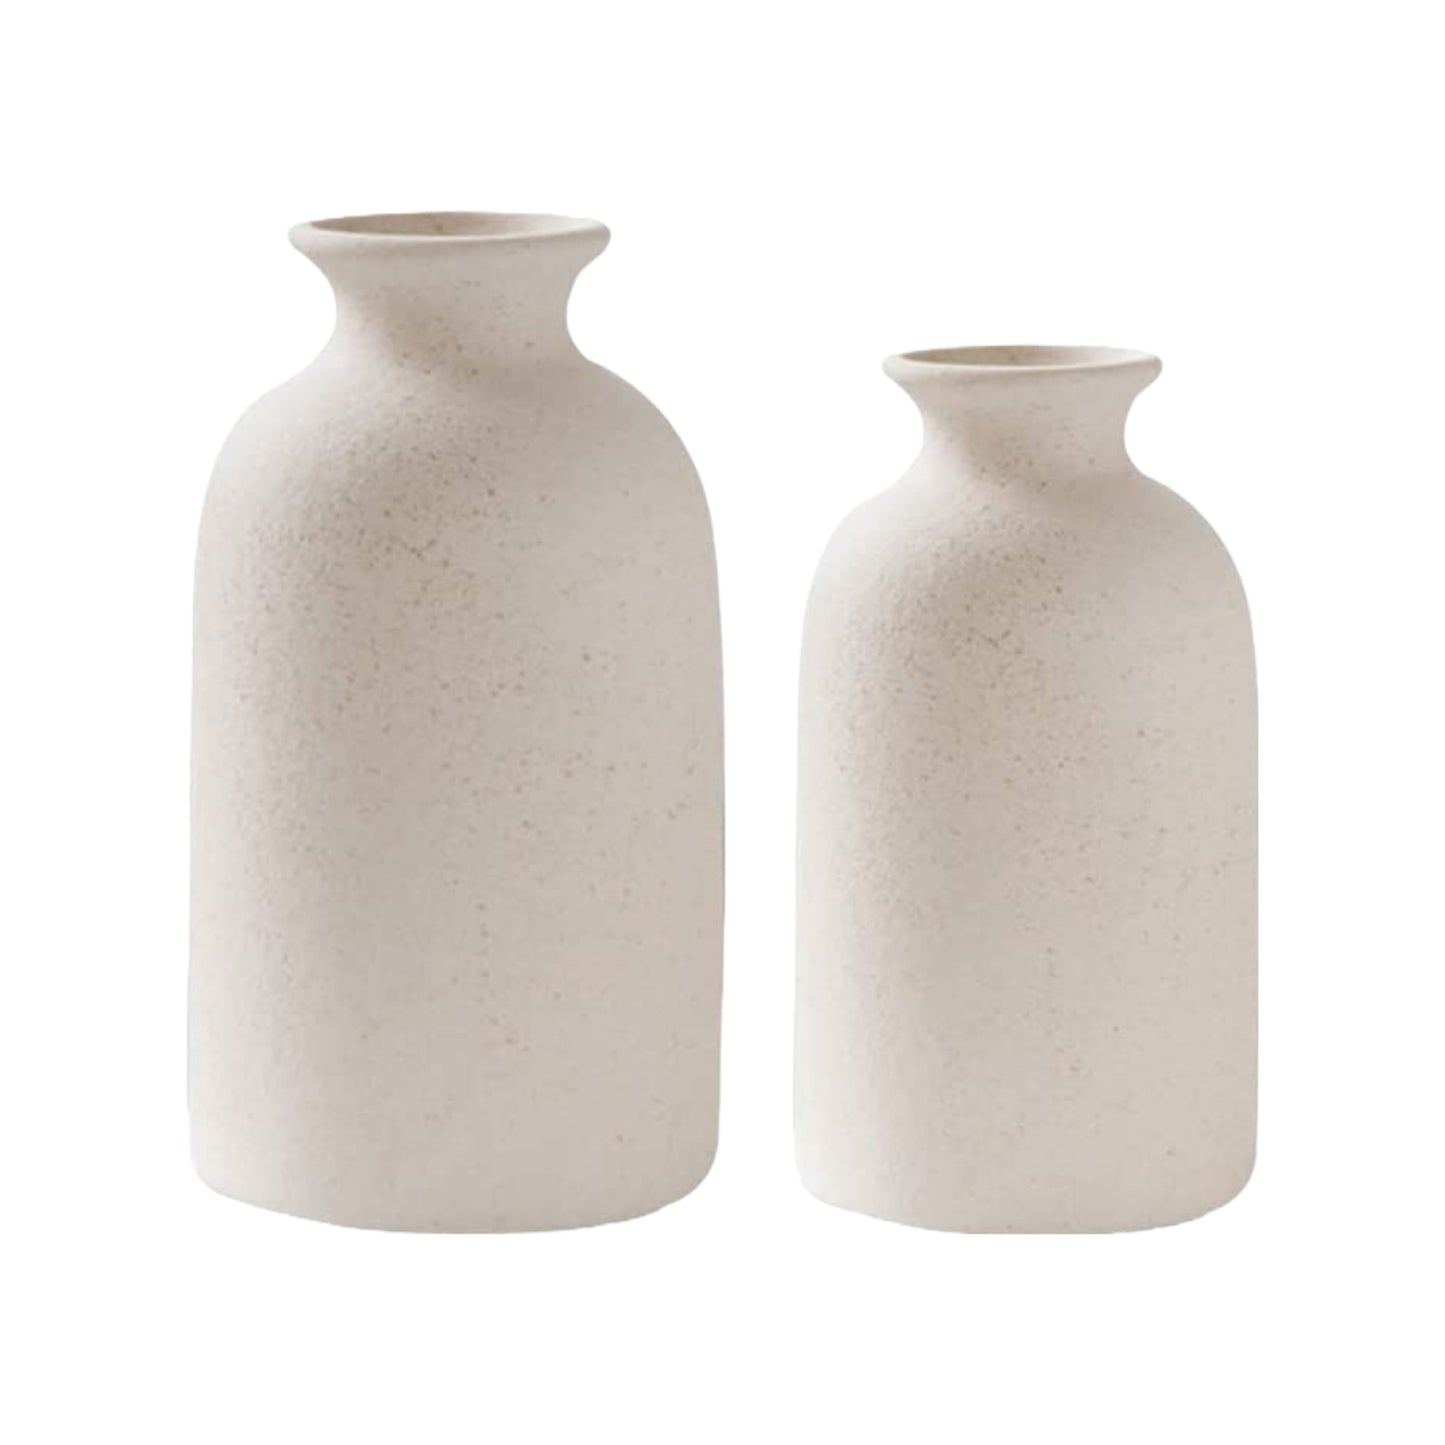 Alabaster Amphora Ceramic Vases